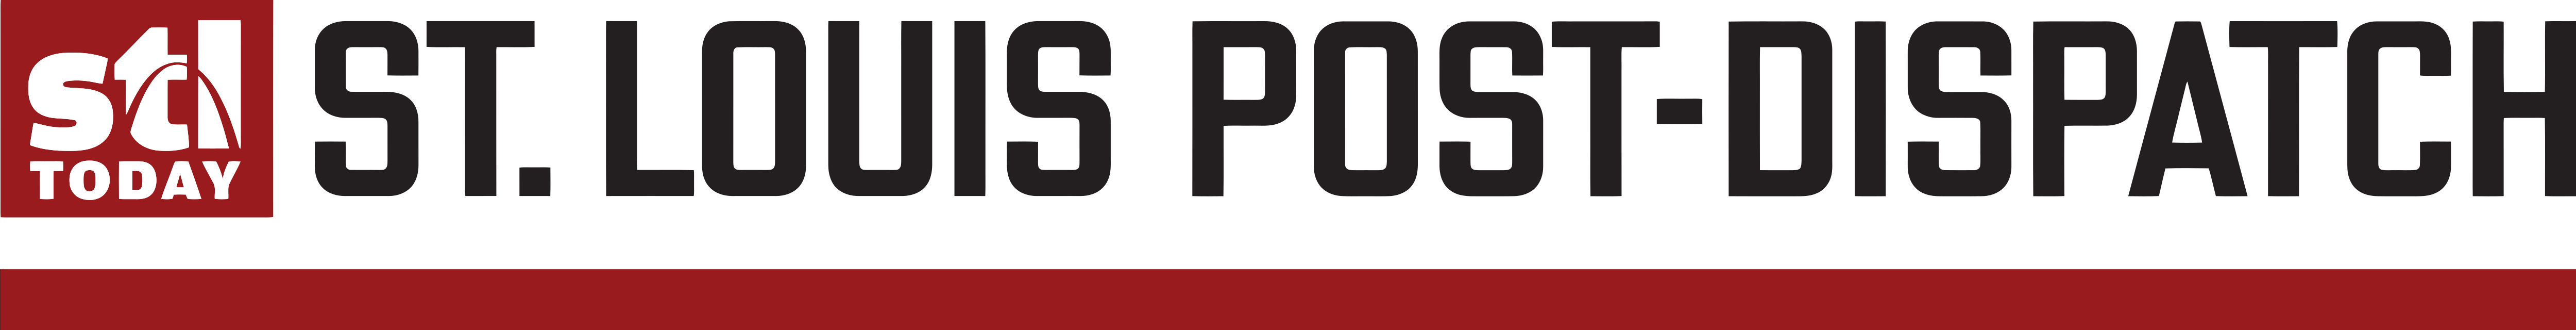   St. Louis Post-Dispatch logo